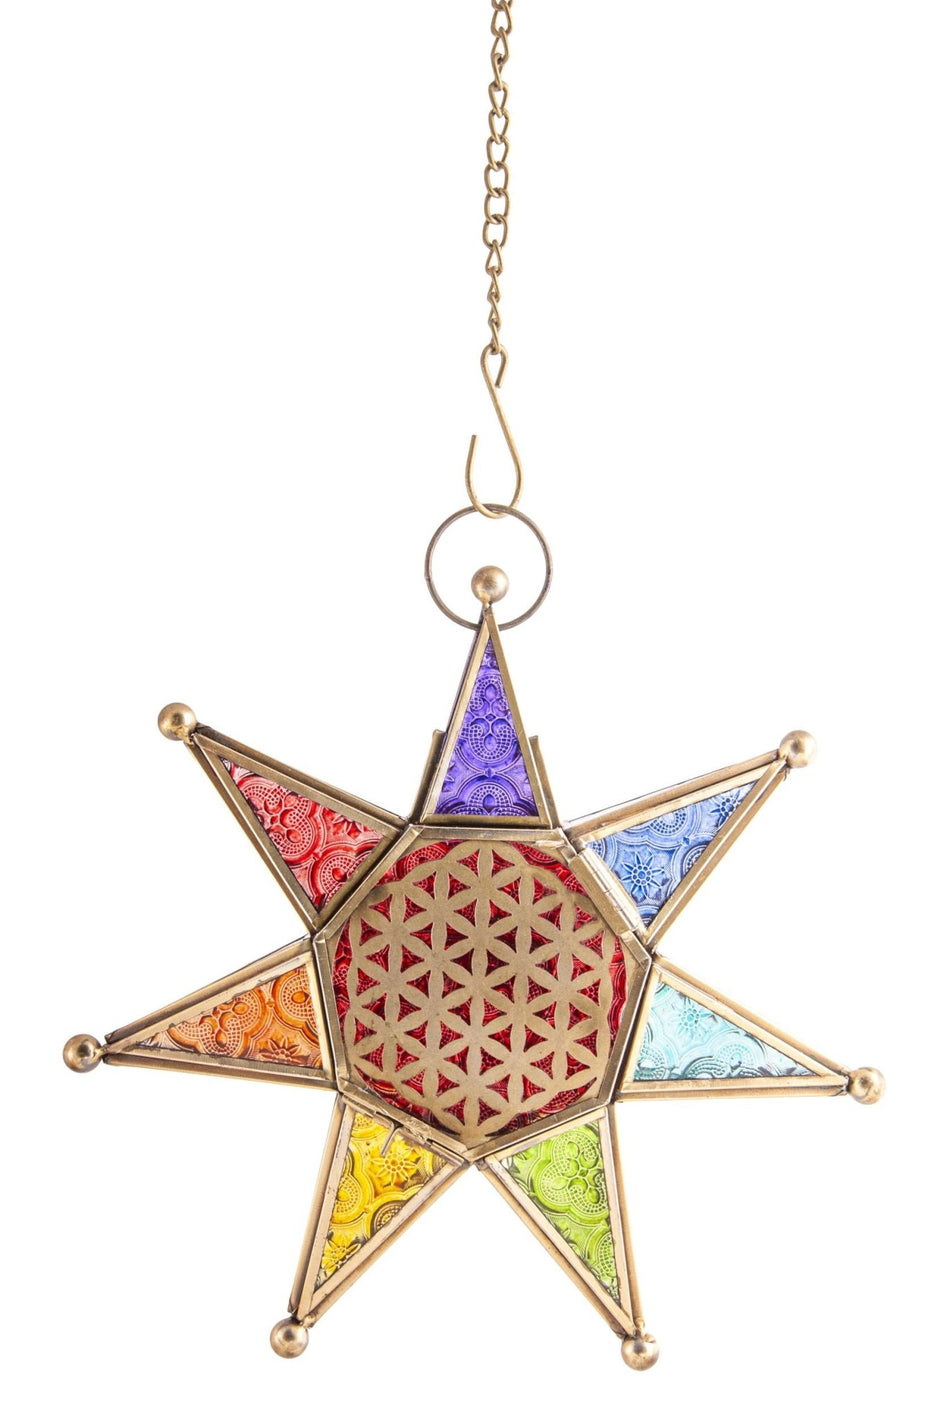 Orientalisches Licht "Chakra Stern" mit Kette Berk